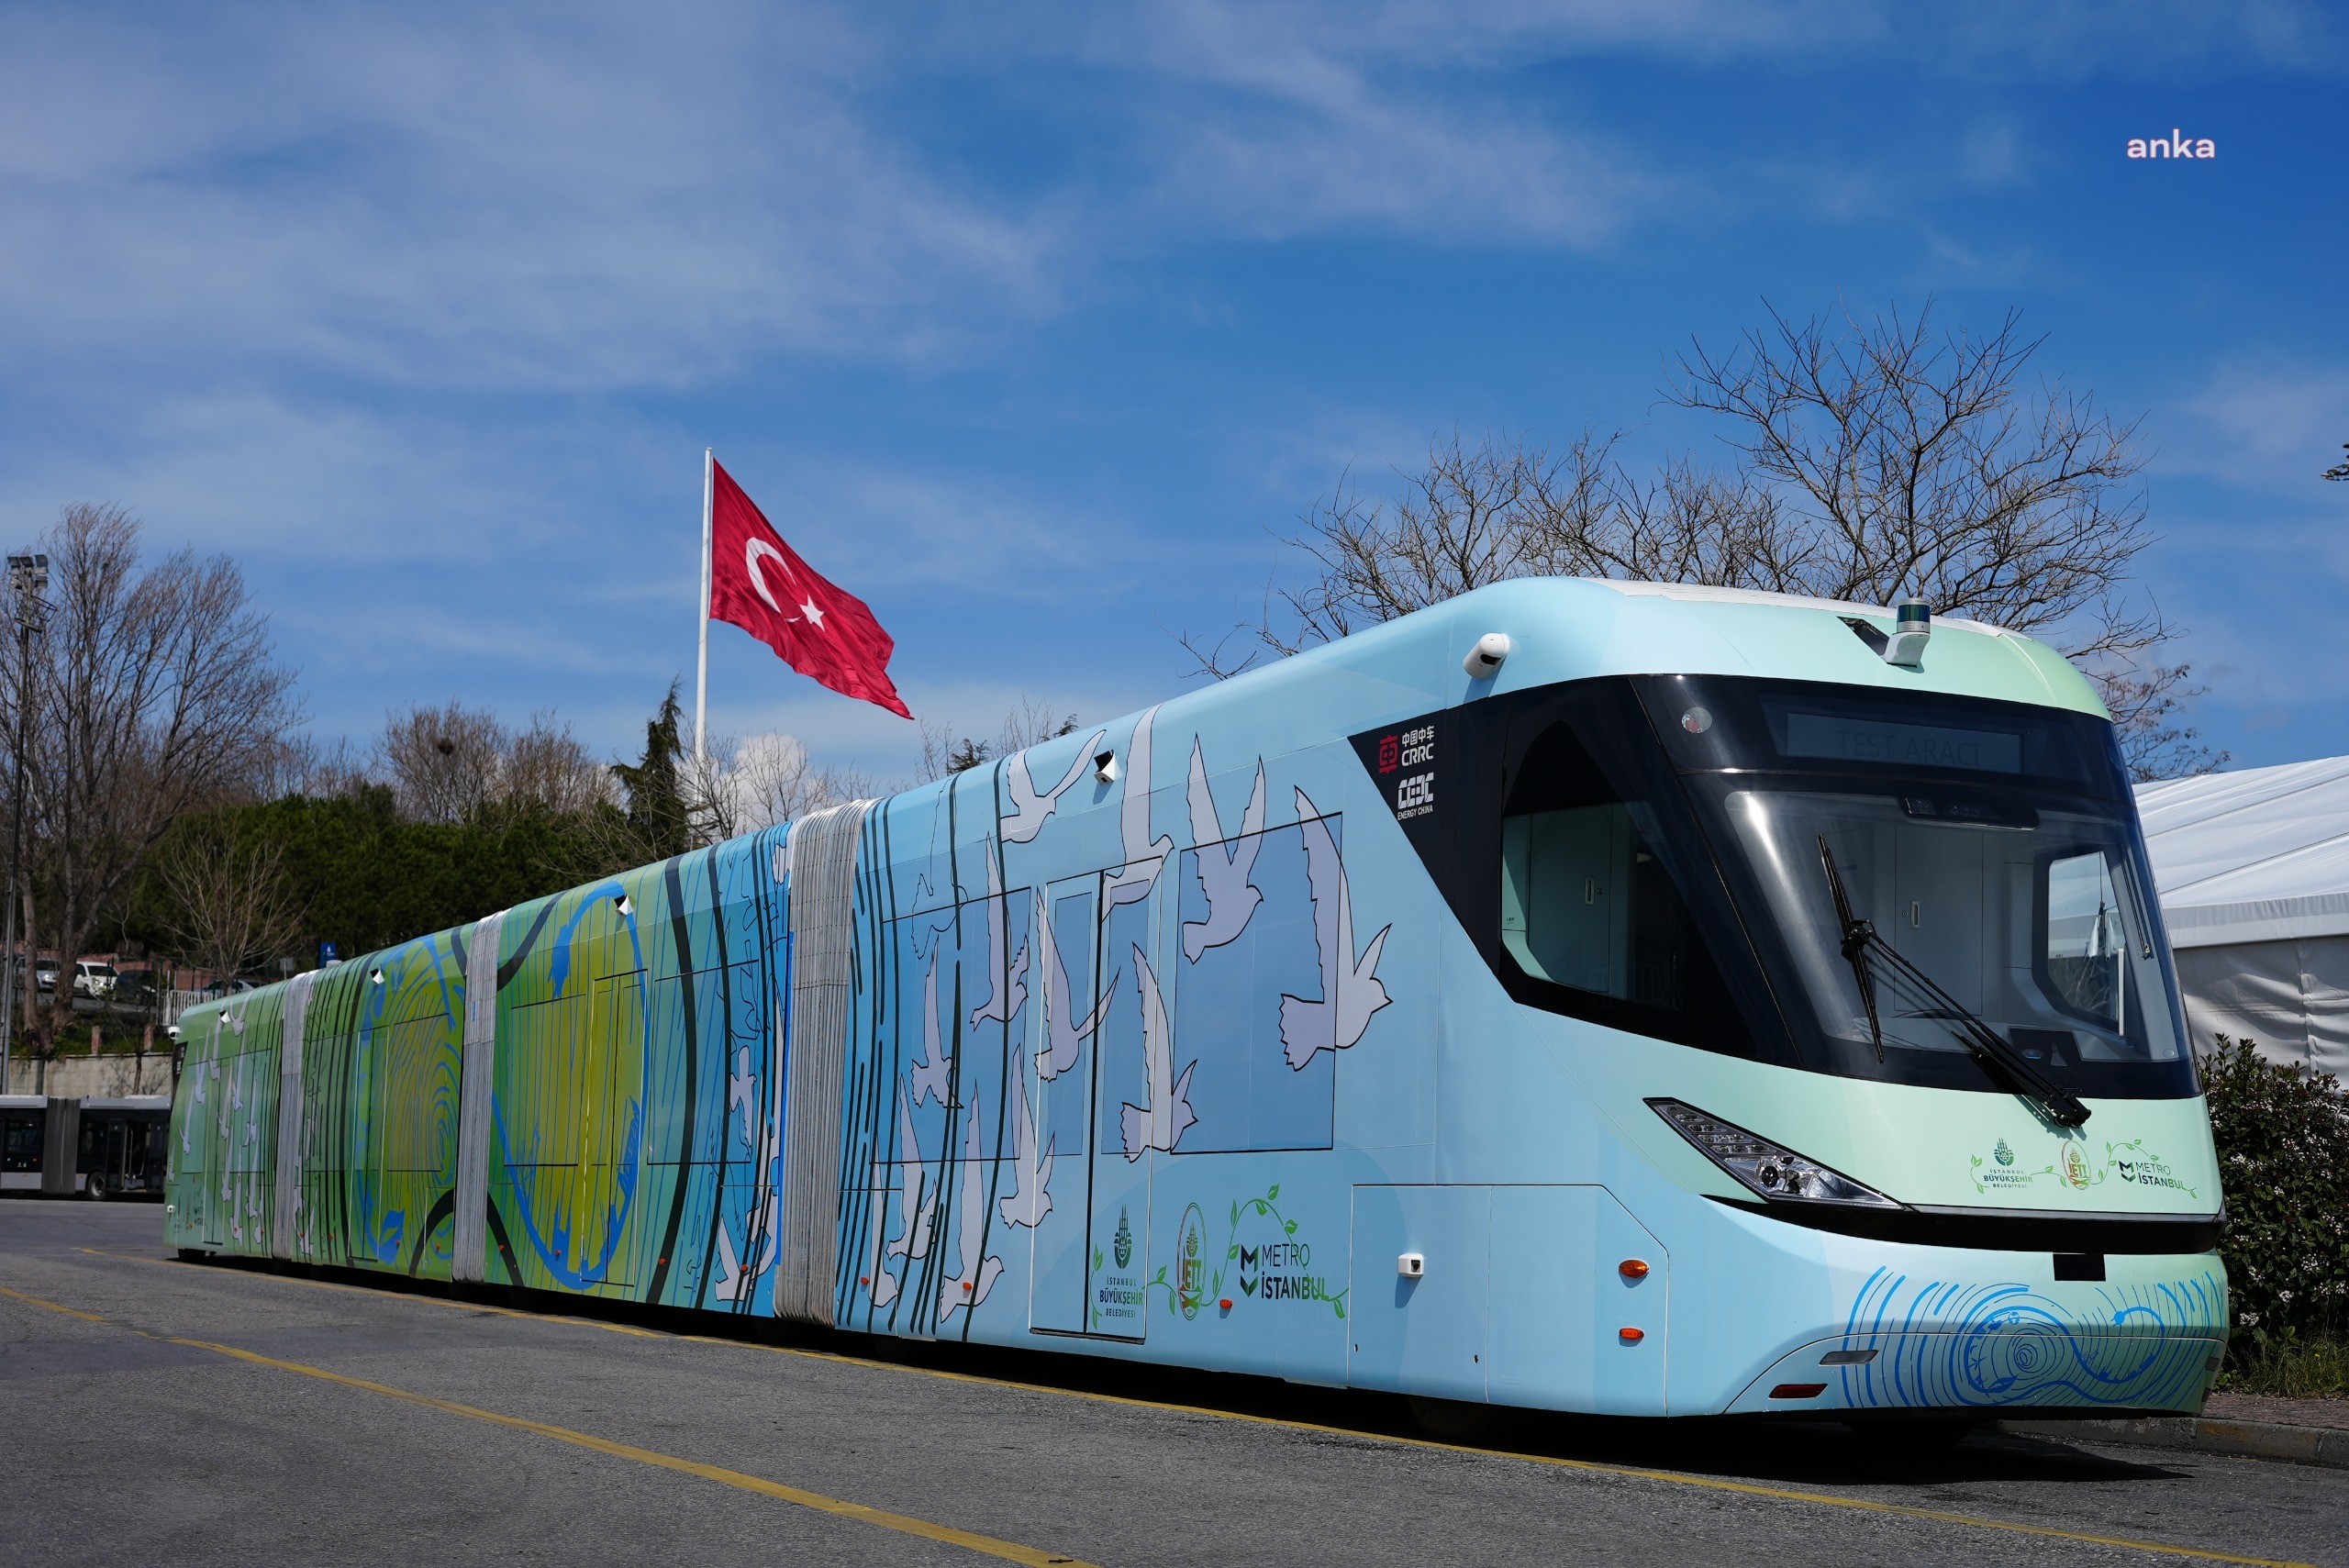 İstanbul'da elektrikli metrobüsler yola çıkıyor: 1 Nisan'da test sürüşünde